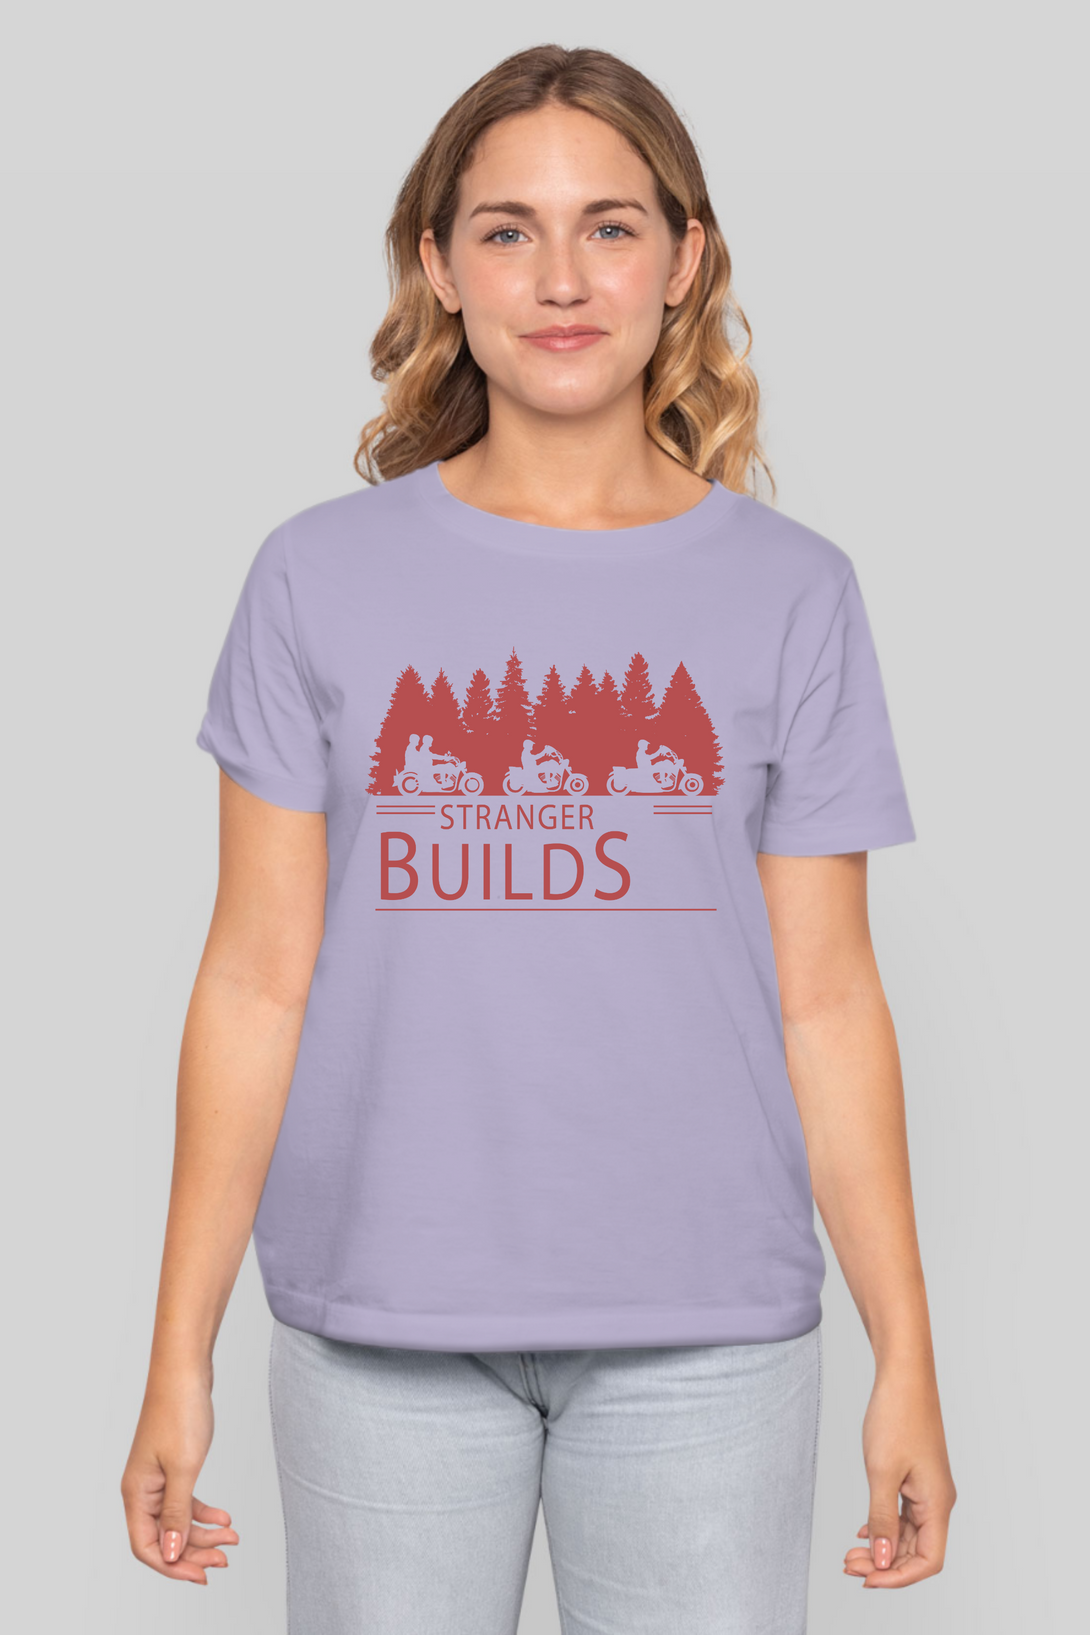 Stranger Builds Printed T-Shirt For Women - WowWaves - 9